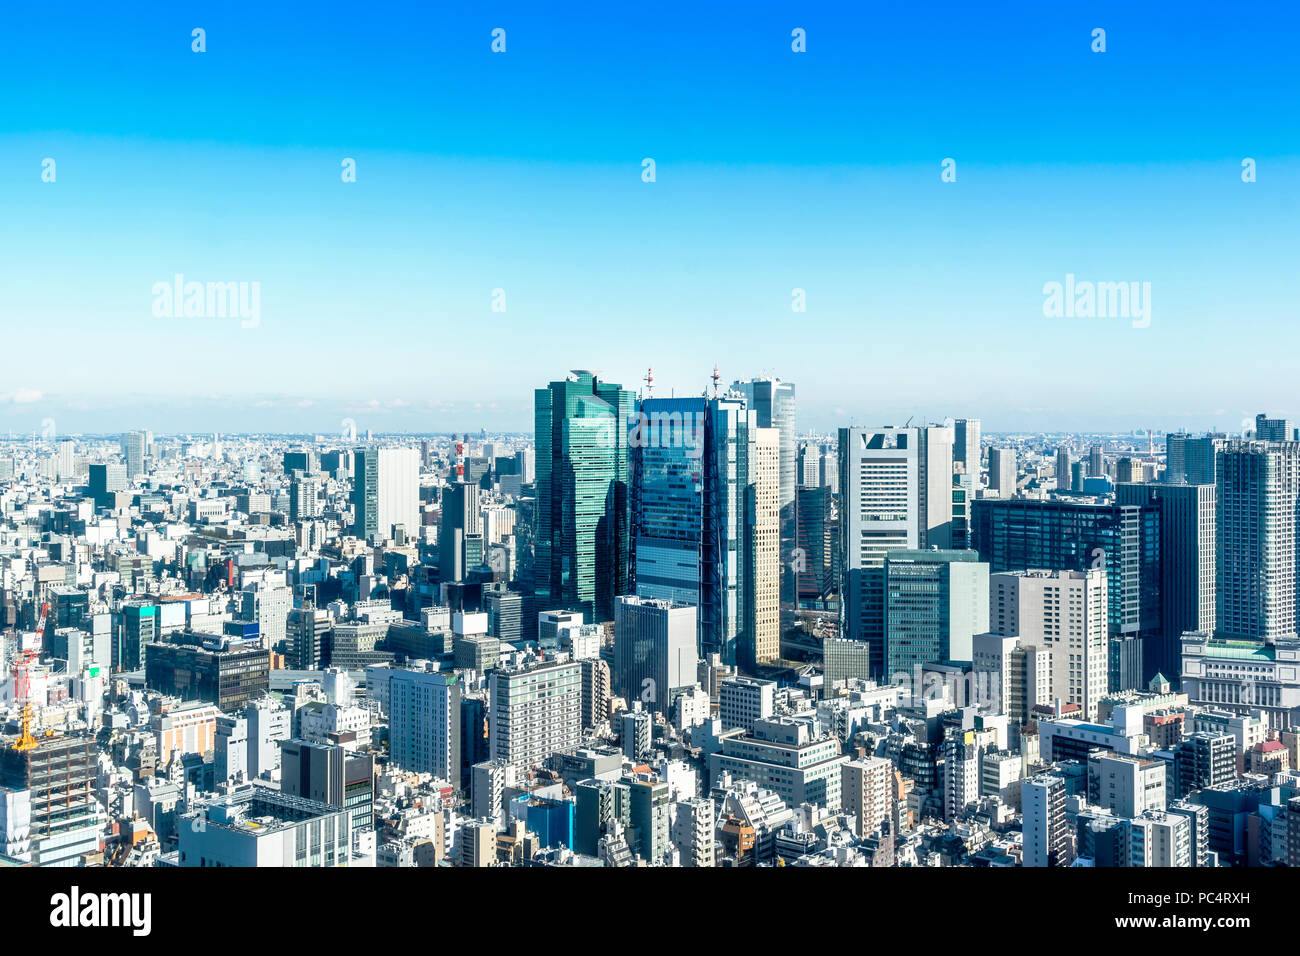 Asien Business Konzept für Immobilien und Corporate Bau - Panoramablick auf die moderne Skyline der Stadt aus der Vogelperspektive Luftaufnahme in der Nähe von Tokyo Tower unter hellen Su Stockfoto